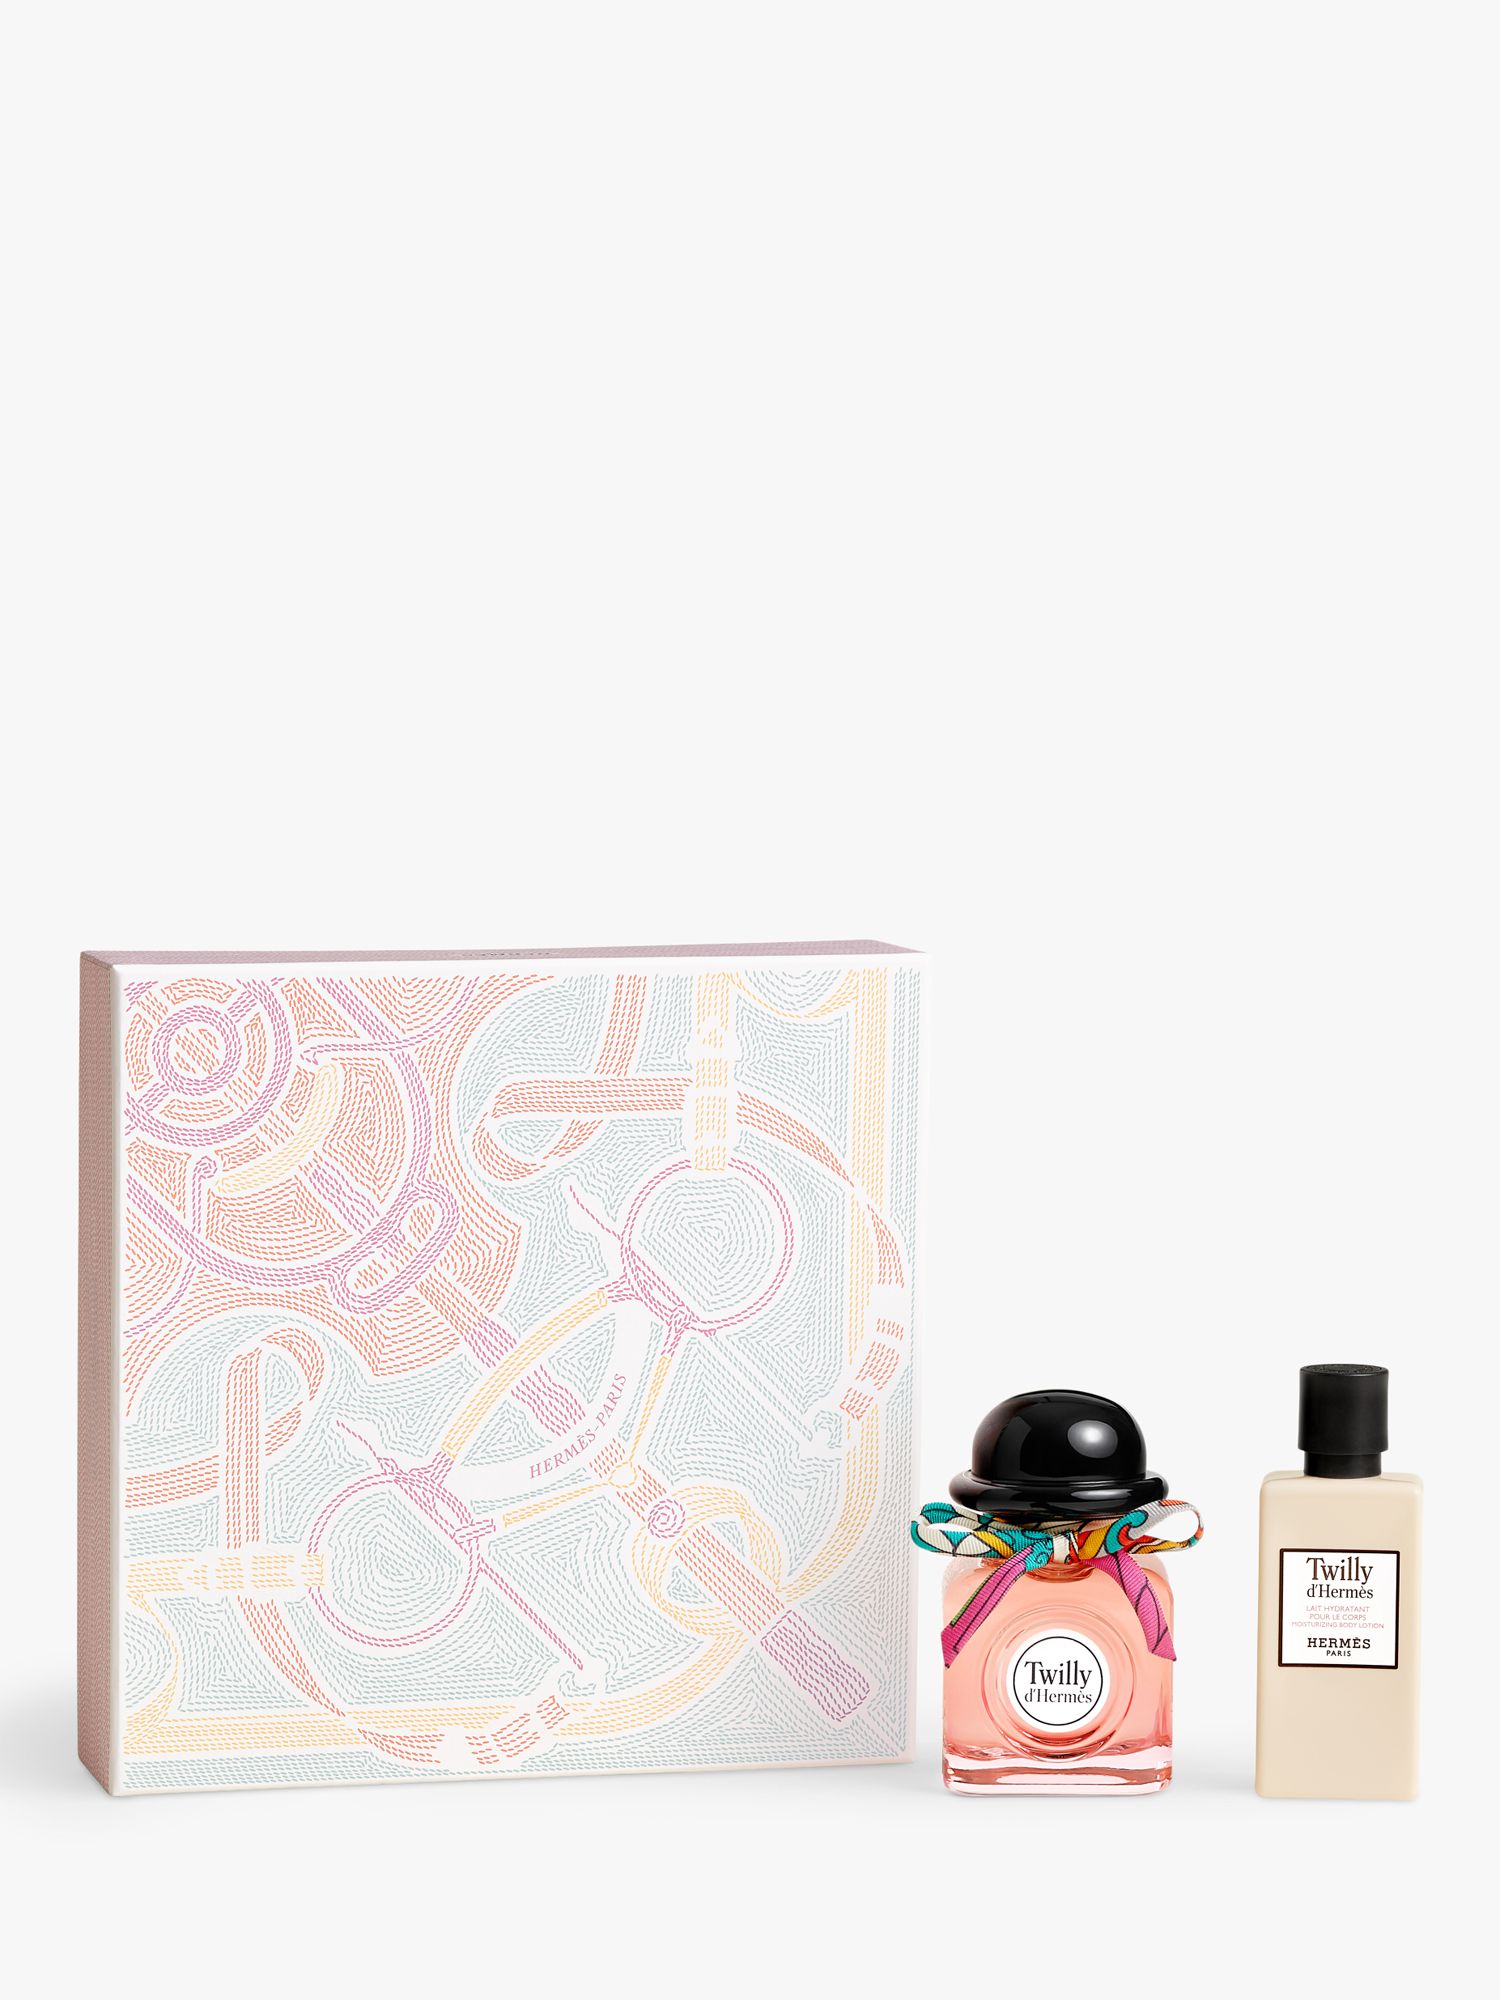 Hermès Twilly d’Hermès Eau de Parfum 50ml Fragrance Gift Set 1